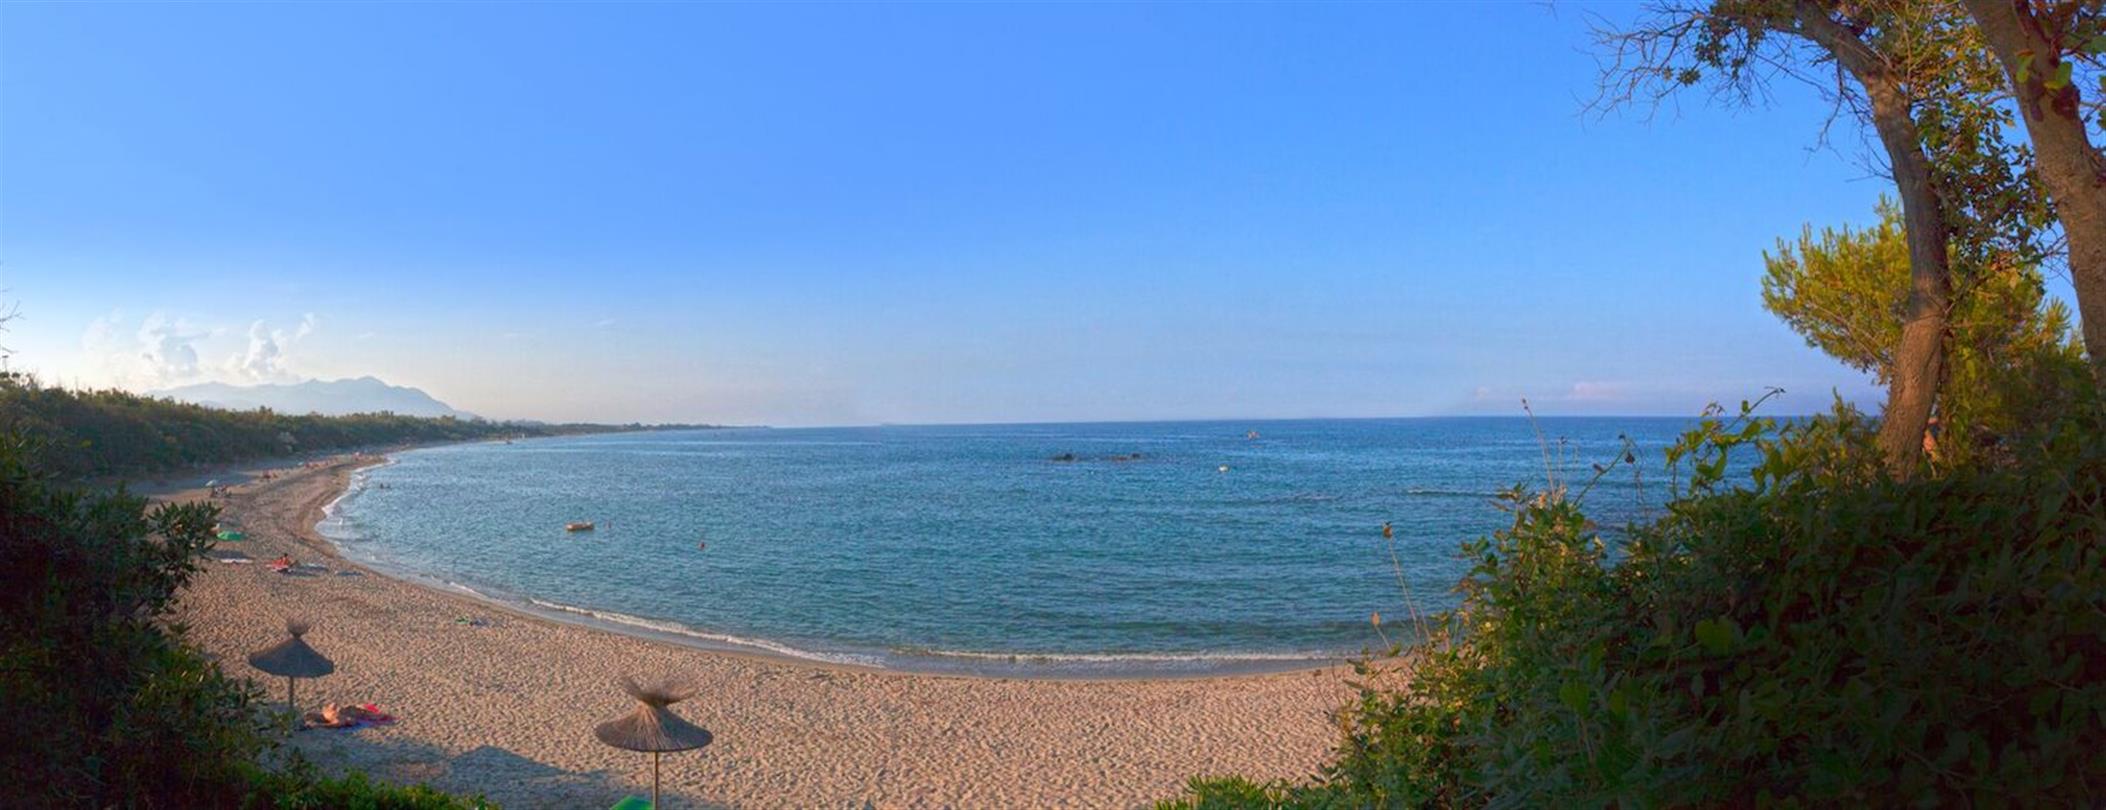 Korsischer FKK-Strand des Feriendorfes, einer der größten FKK-Strände Frankreichs - Domaine de Bagheera 